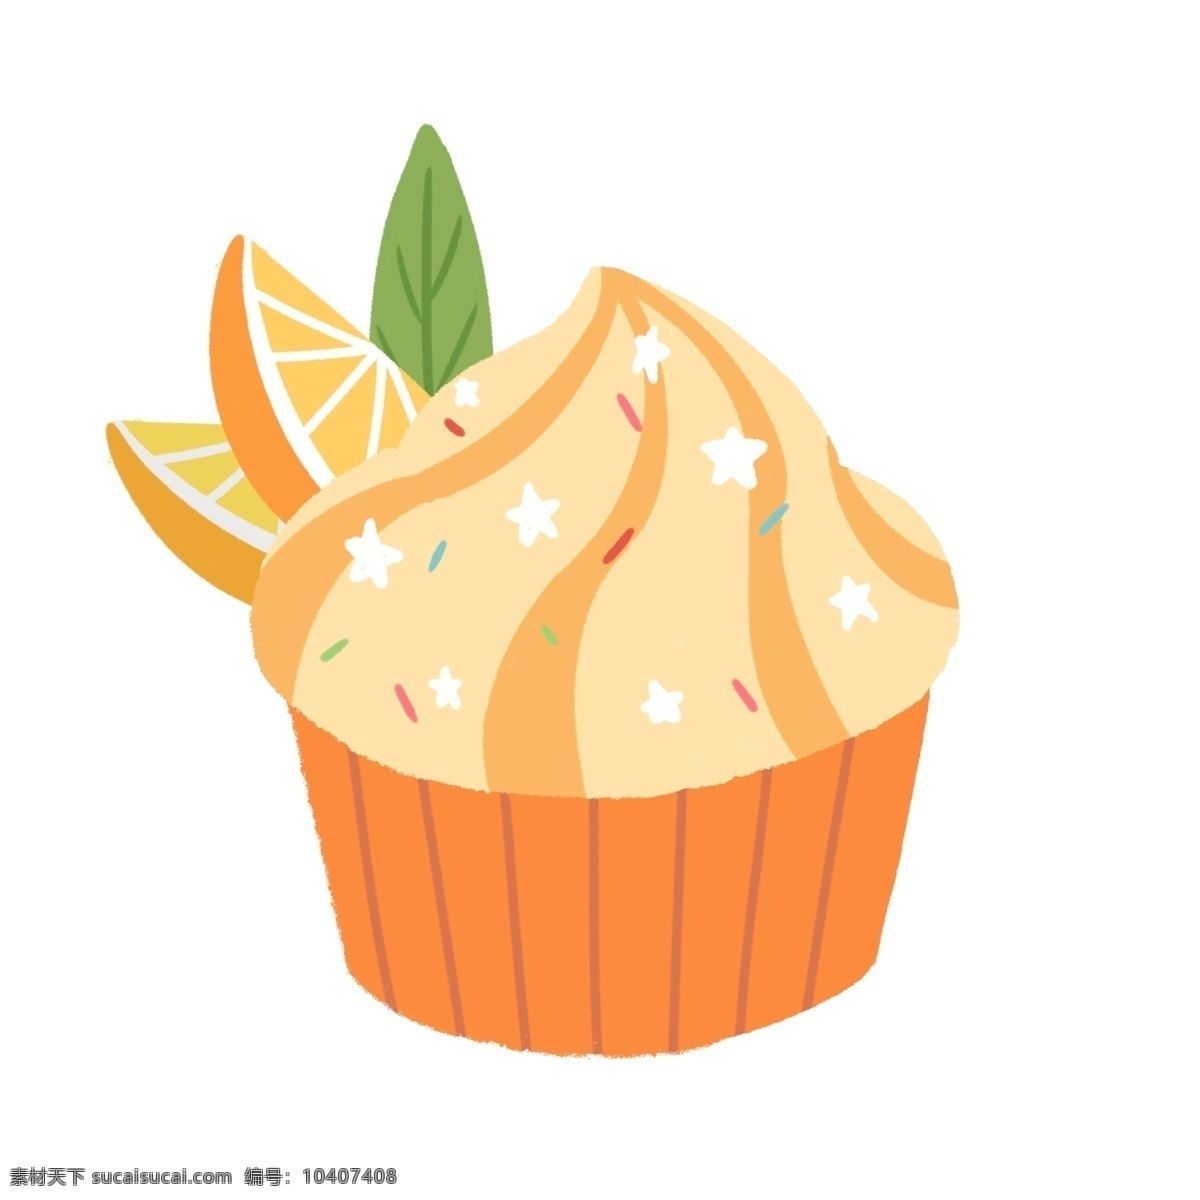 橘子 杯 蛋糕 装饰 插画 黄色的蛋糕 橘子蛋糕 蛋糕装饰 水果蛋糕 漂亮的蛋糕 创意蛋糕 立体蛋糕 奶油蛋糕